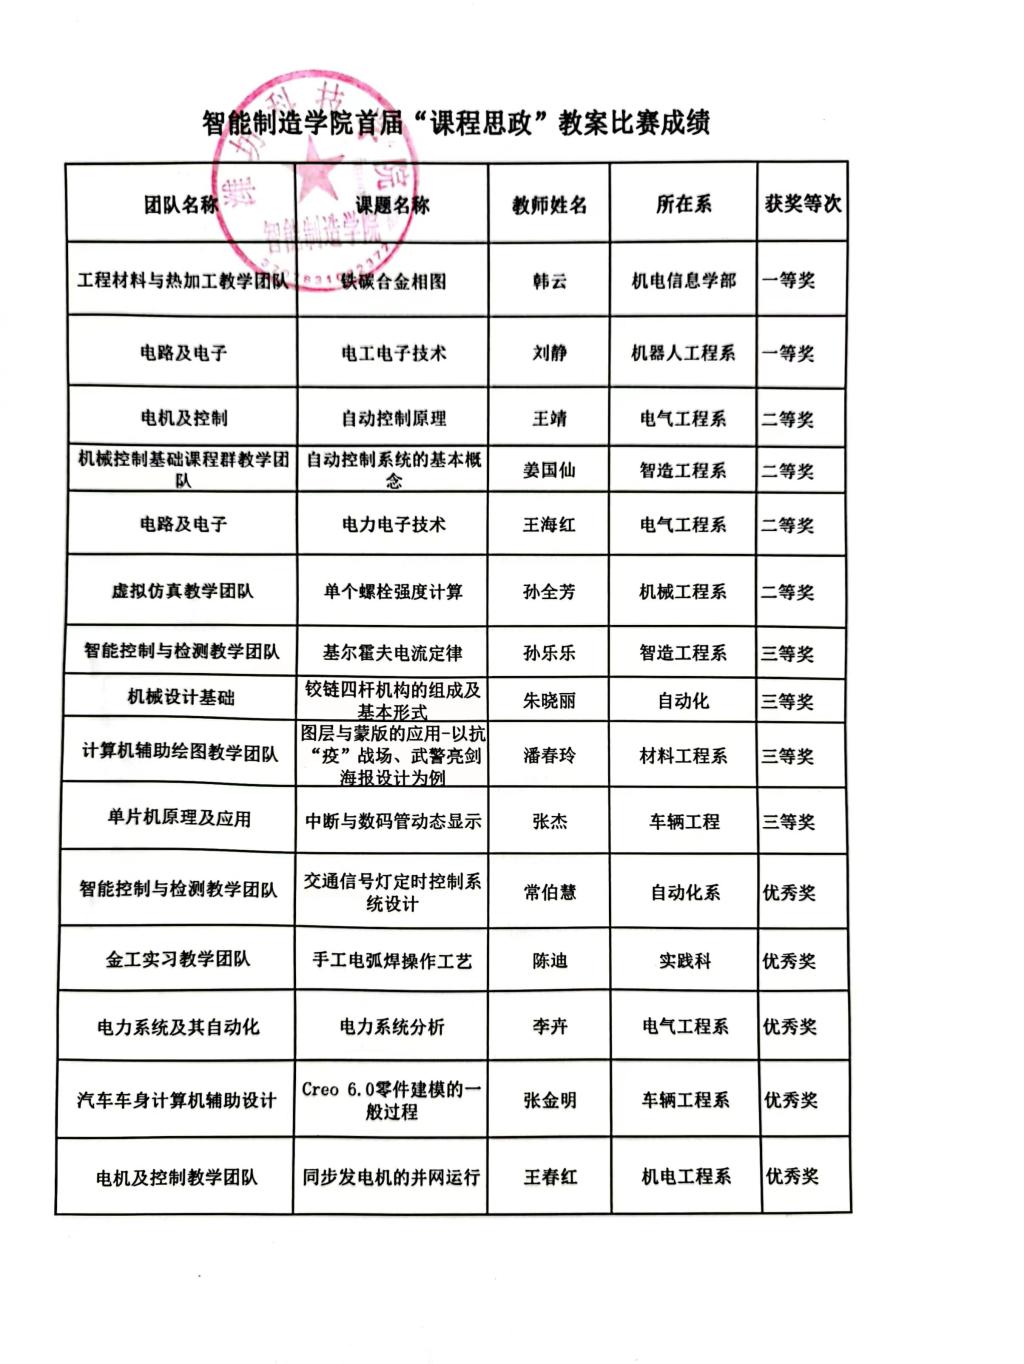 2019年国家奖学金初选结果公示----上海硅酸盐所研究生教育